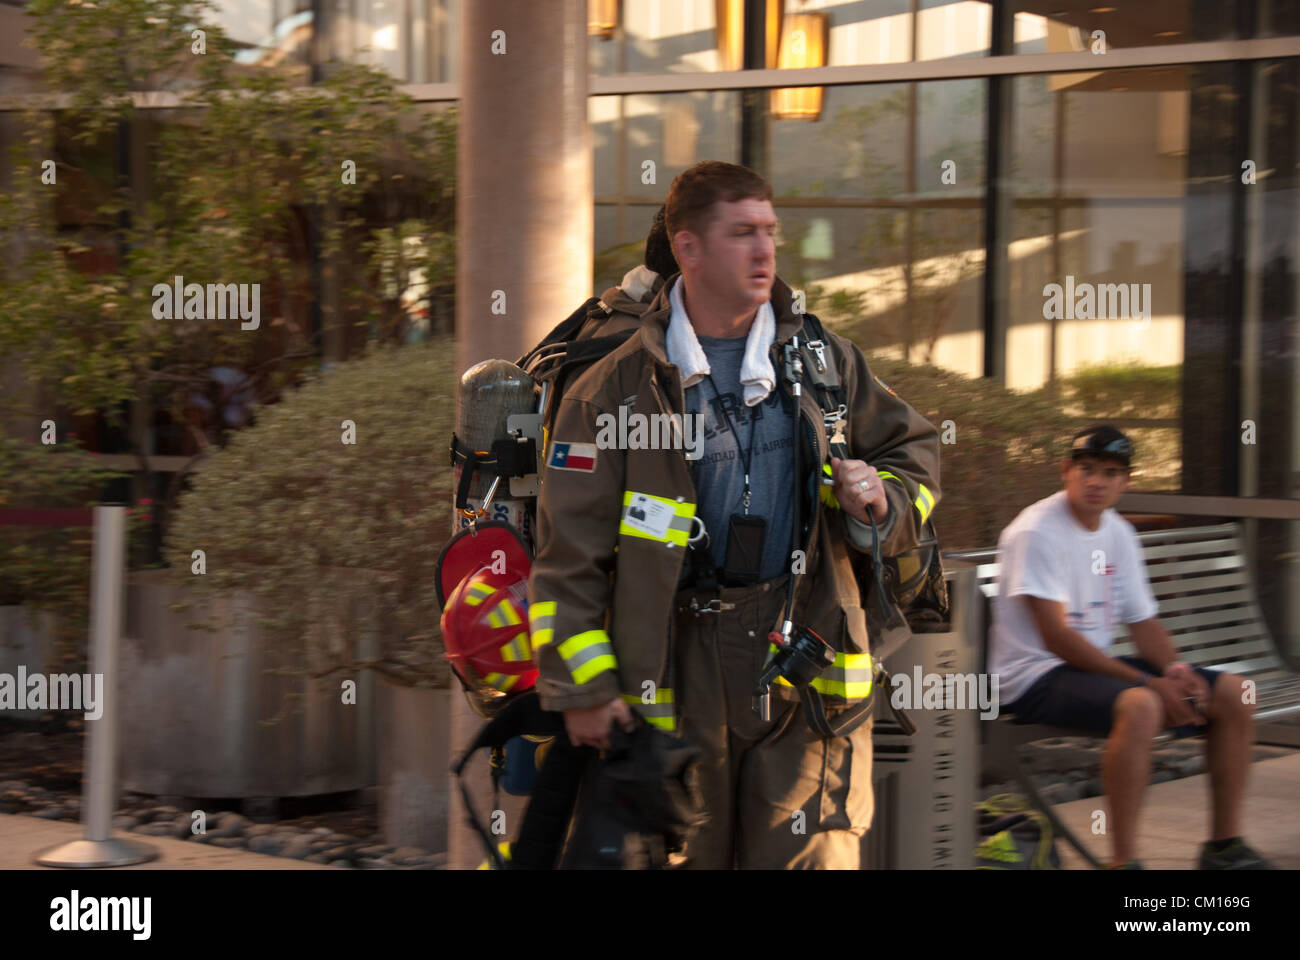 11 septembre 2012 San Antonio, Texas, USA - Brad, un pompier de San Antonio, après avoir franchi les étapes jusqu'au sommet de la Tour des Amériques d'observer le 11 septembre et l'honneur des pompiers qui sont morts dans les tours jumelles. Brad a grimpé la tour 3 fois ; chaque voyage est plus de 950 étapes. Banque D'Images